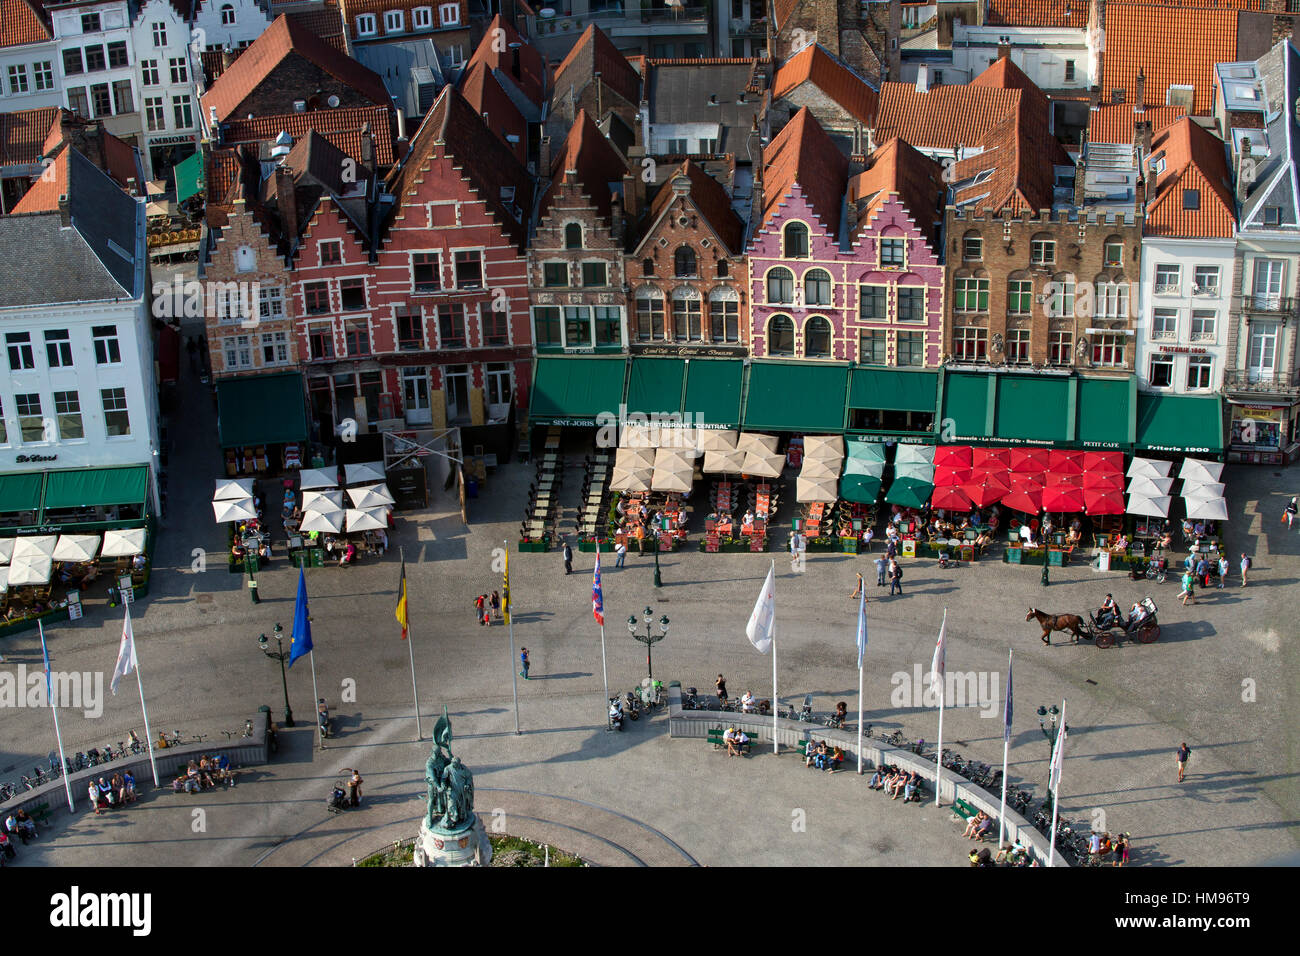 Markt Square visto dalla parte superiore della torre campanaria(Belfort Torre), Bruges, Fiandre Occidentali, Belgio Foto Stock